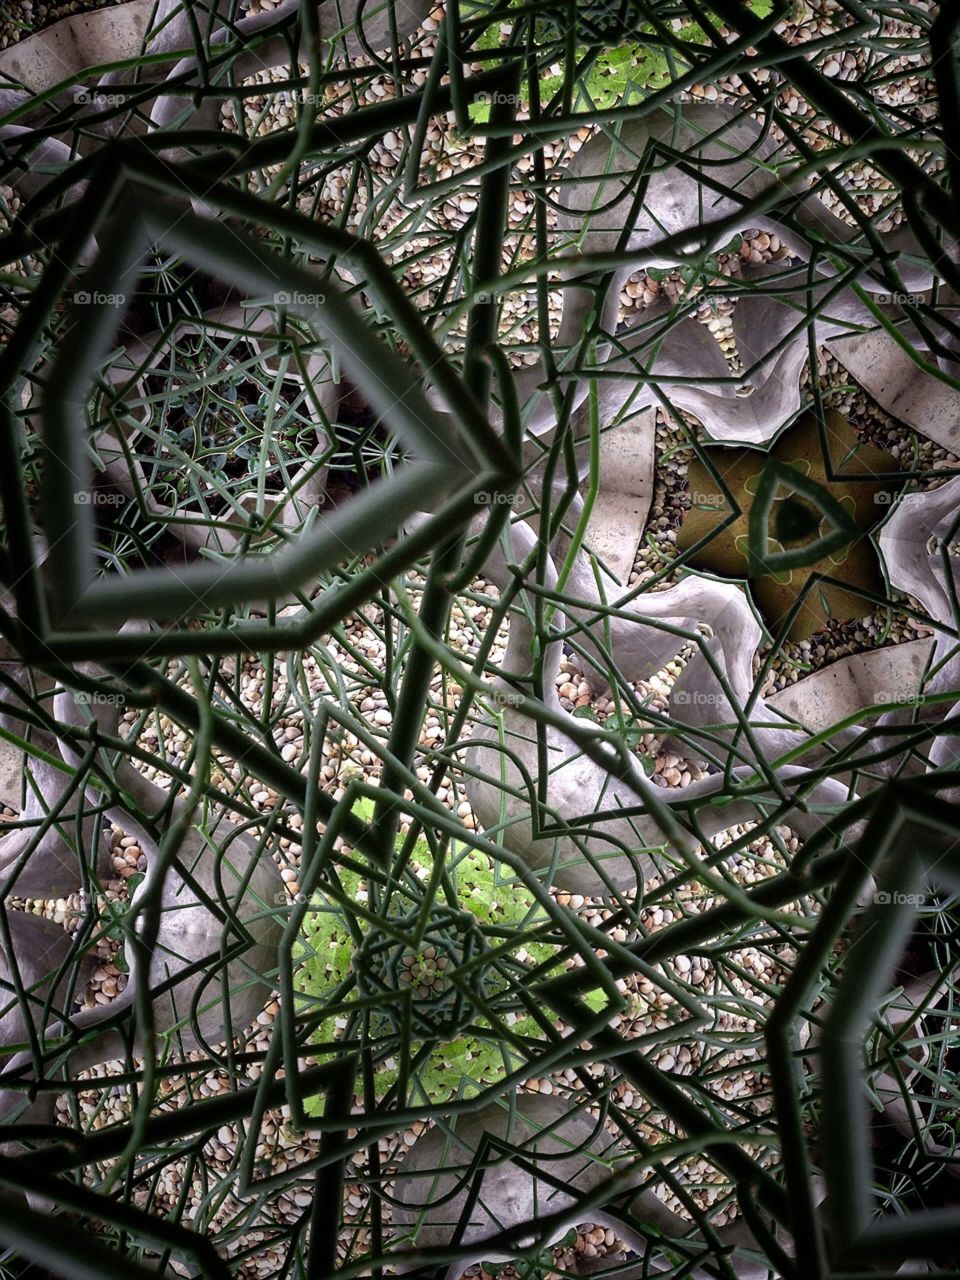 Kaleidoscope 7. My garden 